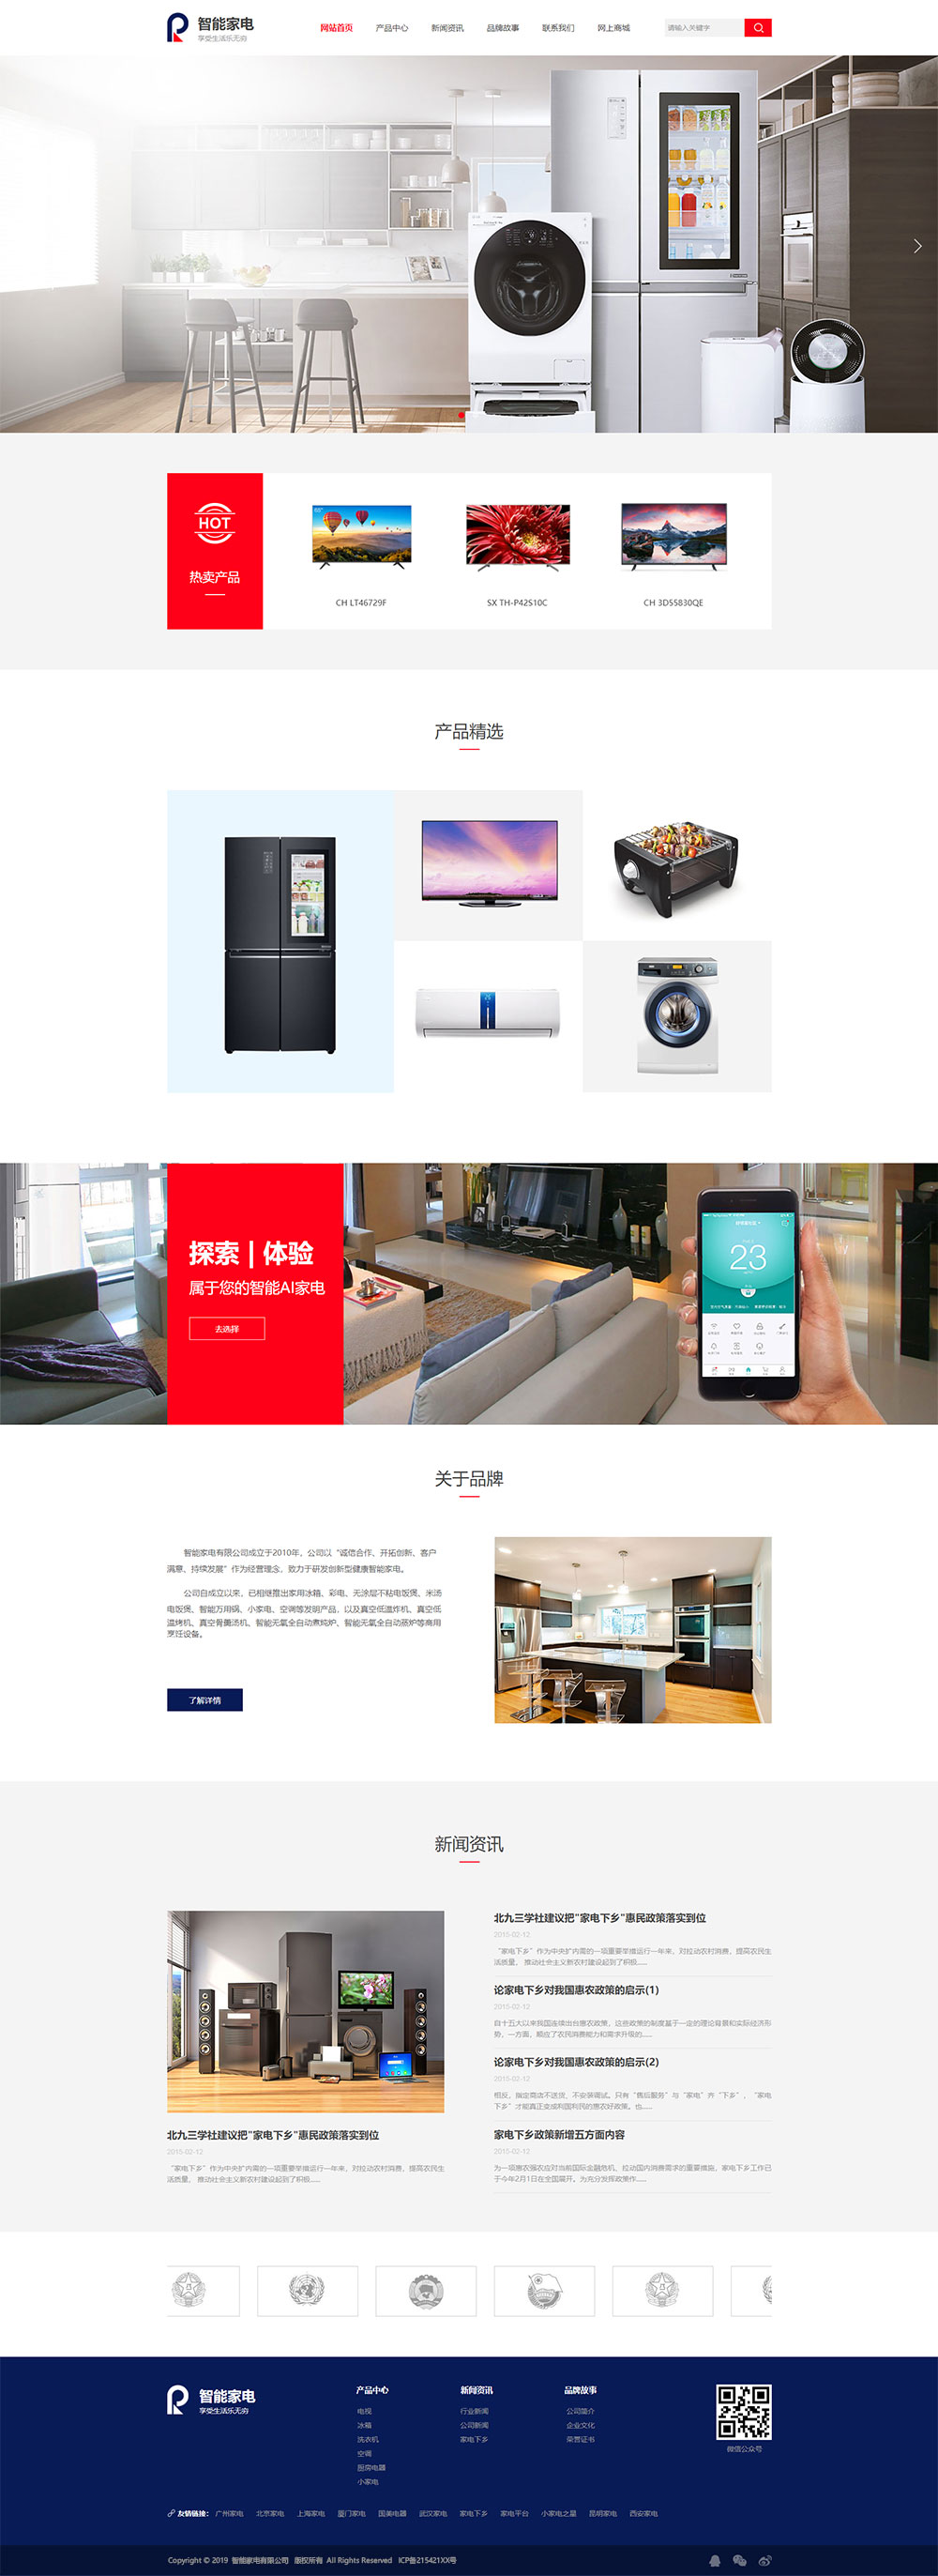 企业网站精美模板-appliances-216